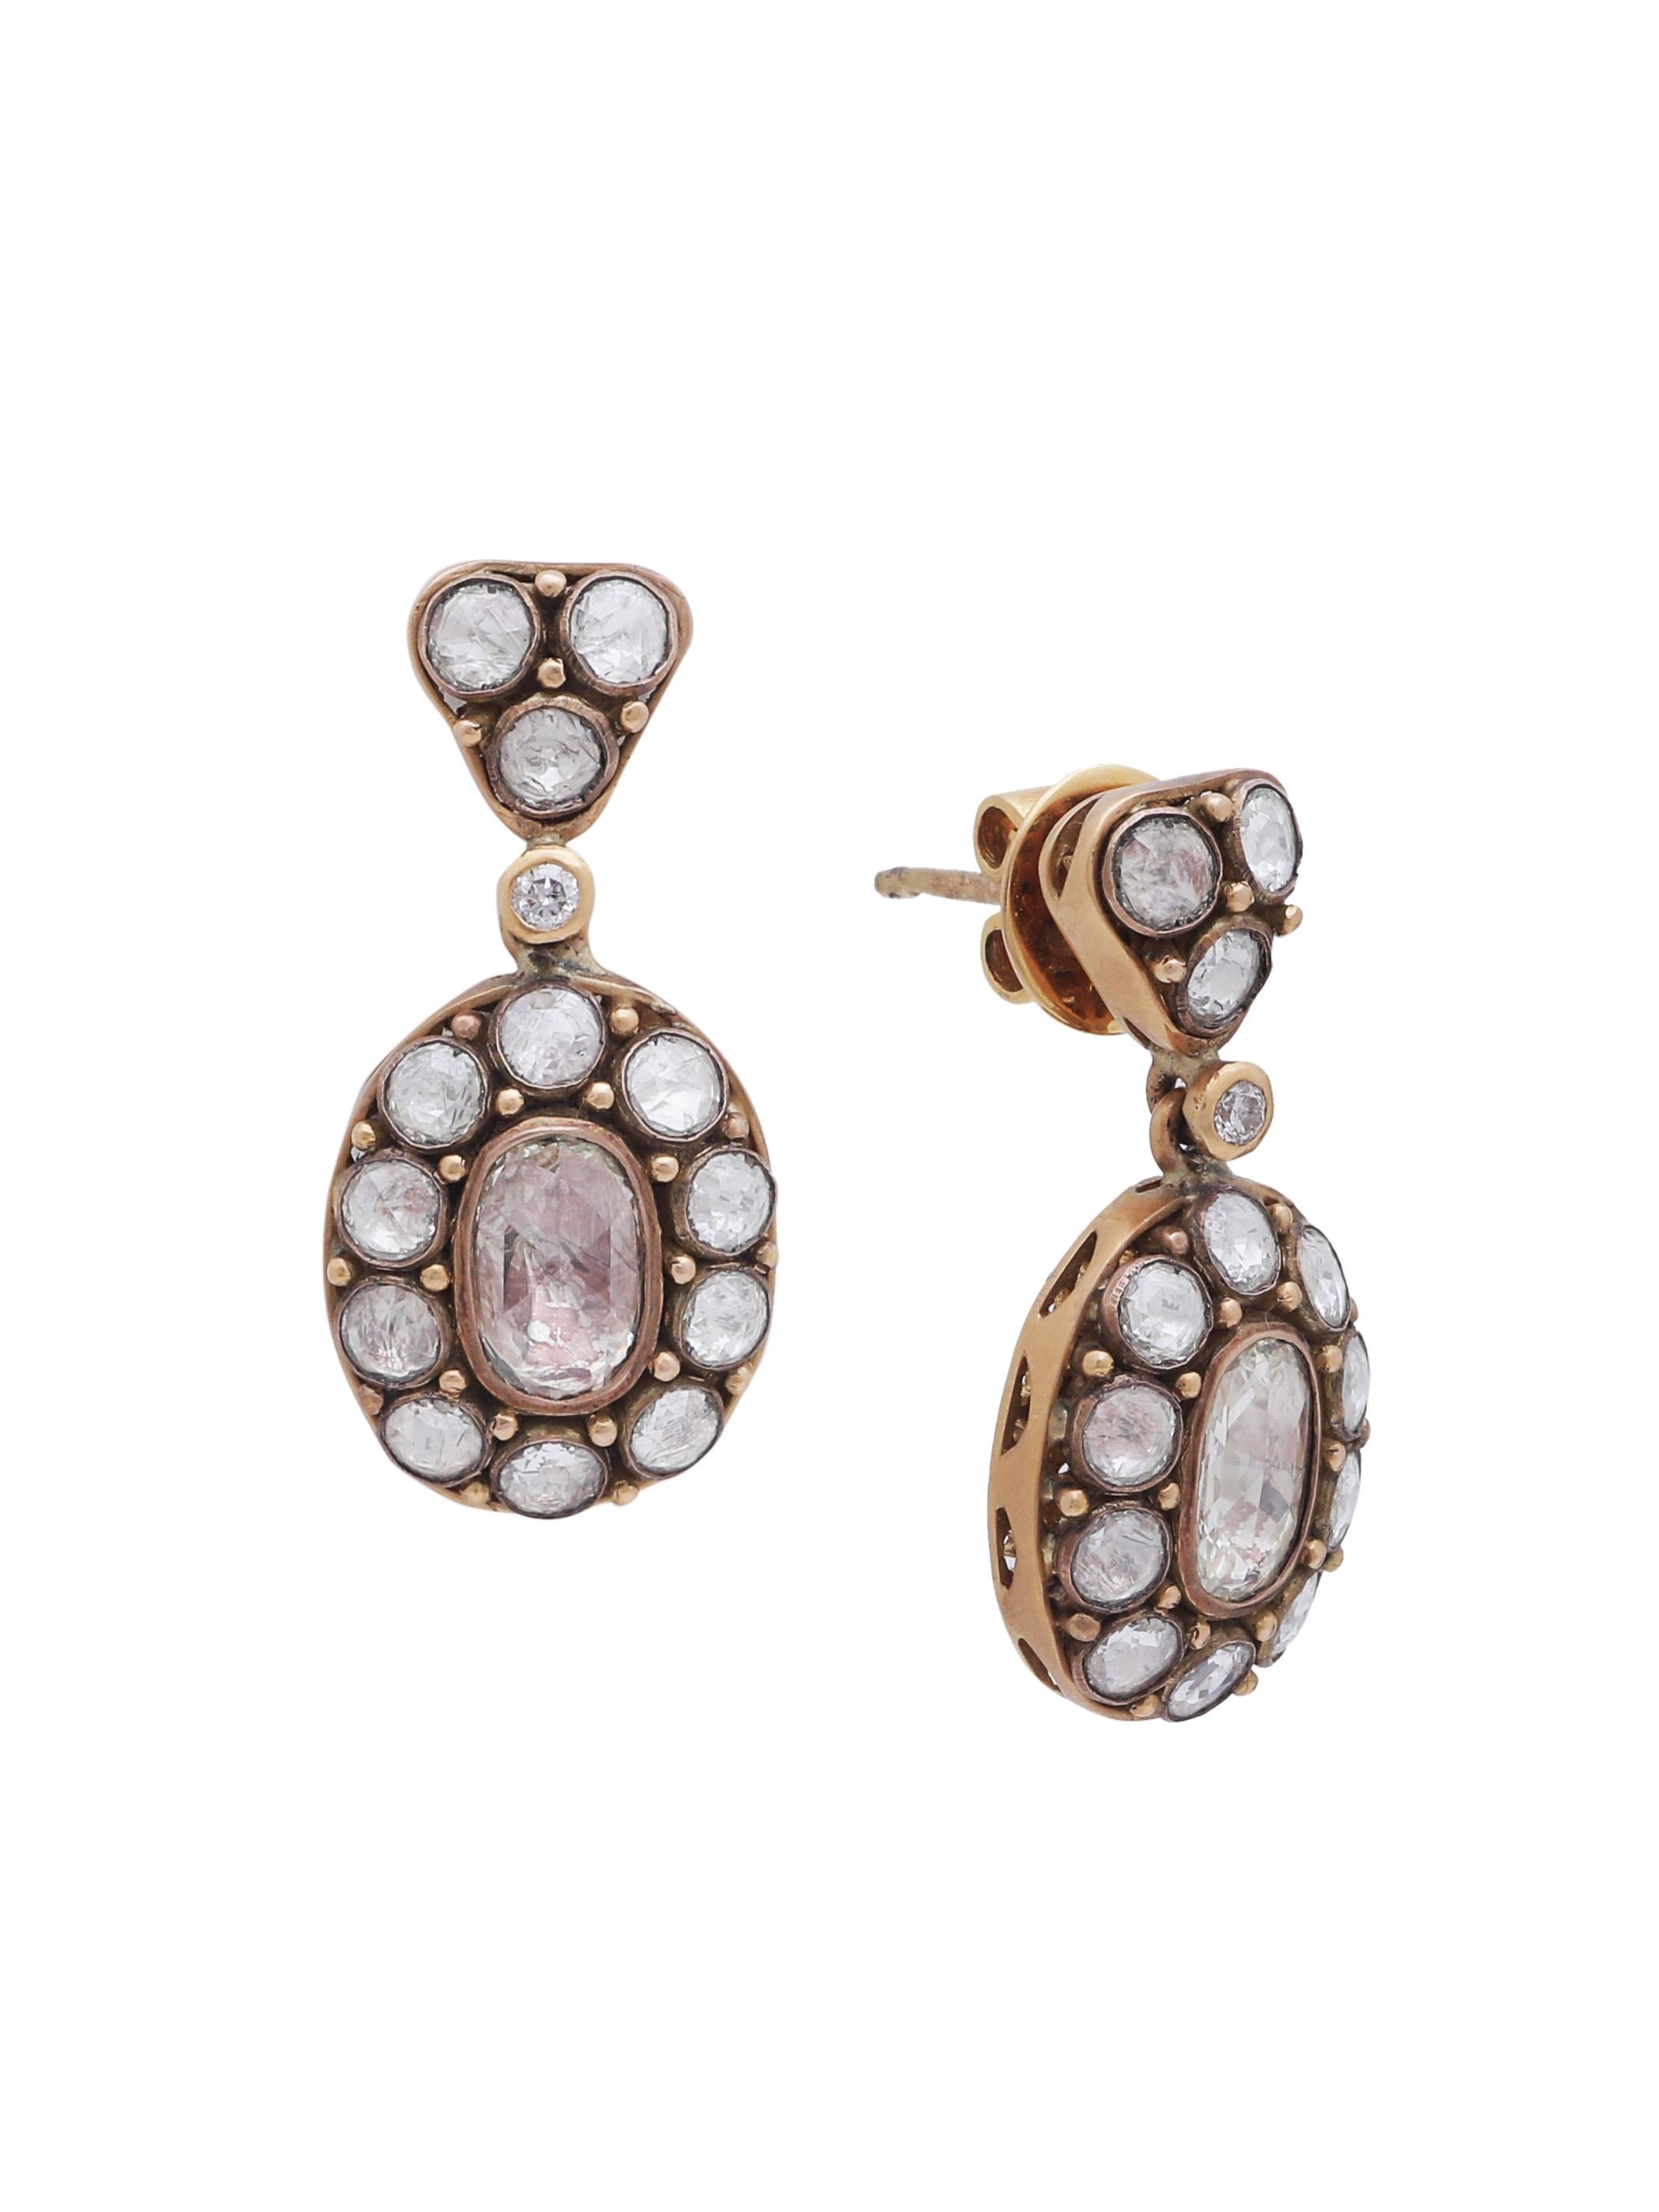 Ein Paar schöne, elegante Diamantohrringe mit 2 ovalen Diamanten im Rosenschliff in der Mitte und kleineren runden Diamanten rundherum. Das edle Design und das geringe Gewicht des Ohrrings machen ihn leicht zu tragen und kennen keine Alters- oder